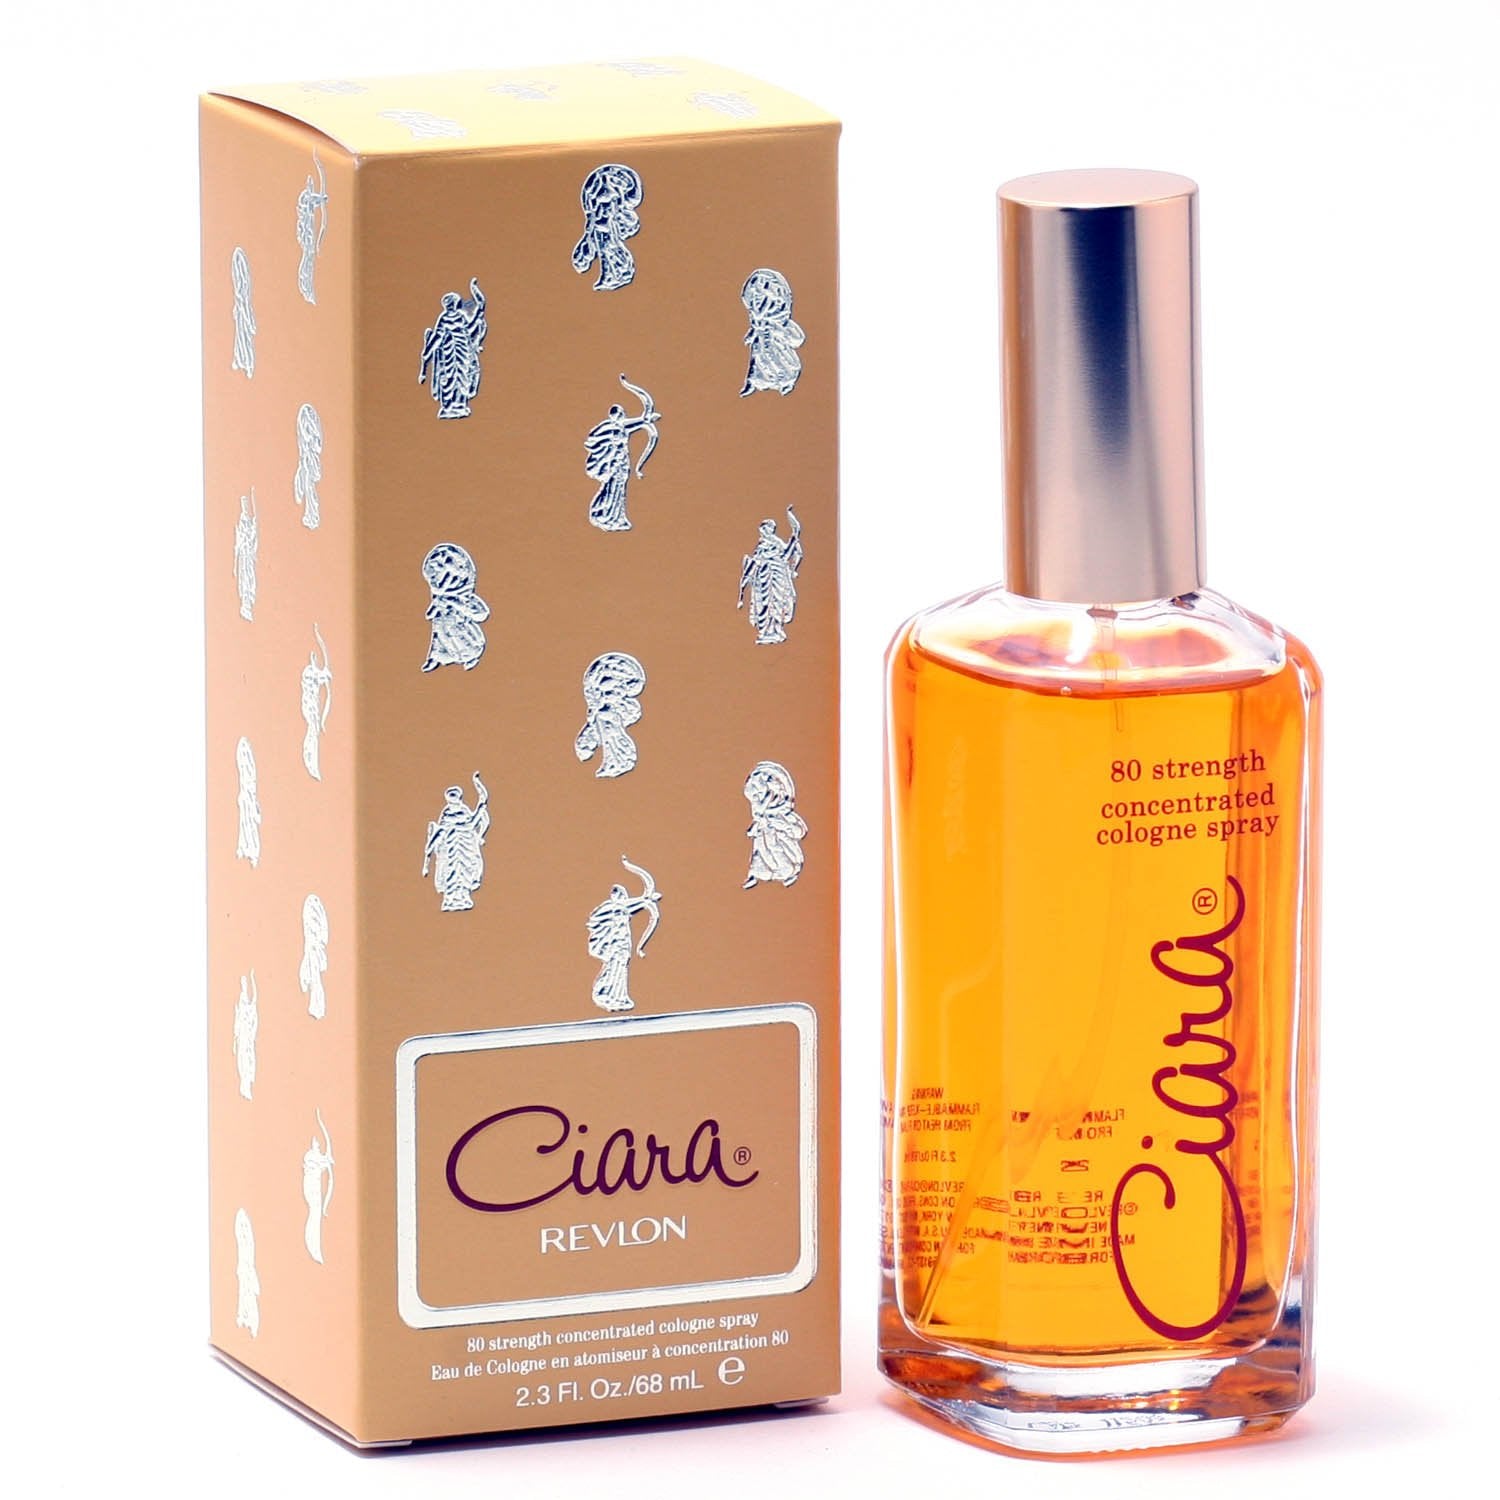 Perfume - CIARA 80 STRENGTH FOR WOMEN BY REVLON - COLOGNE SPRAY, 2.3 OZ